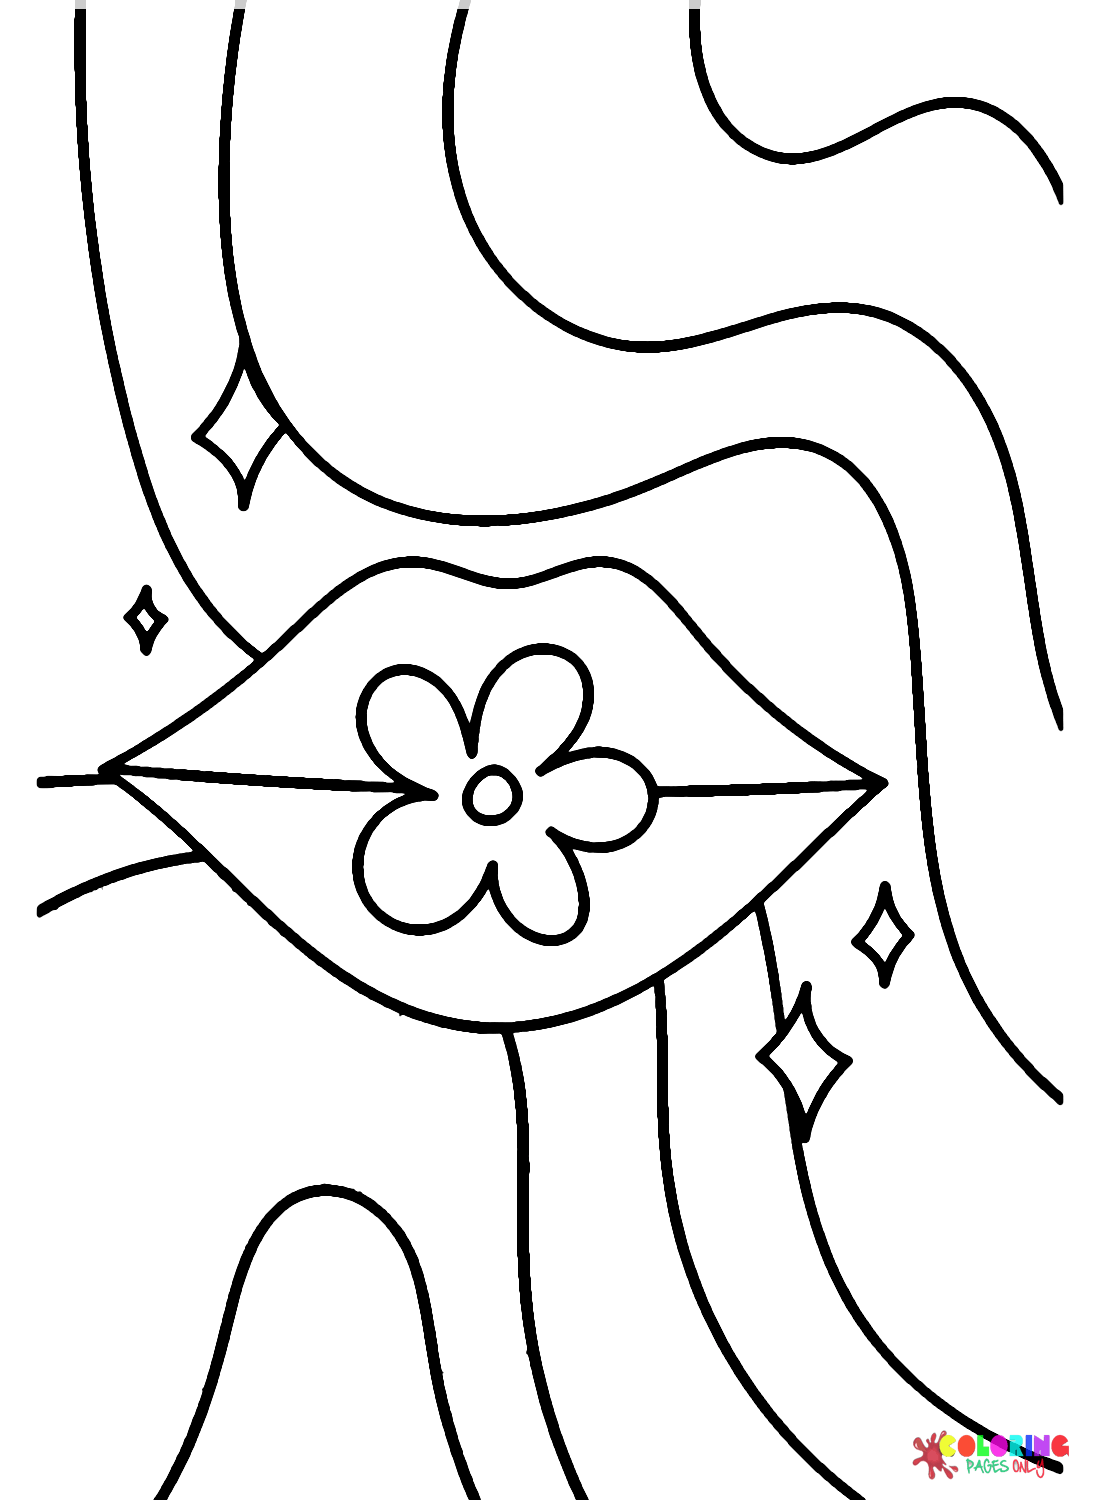 Цветок хиппи и губы от Хиппи